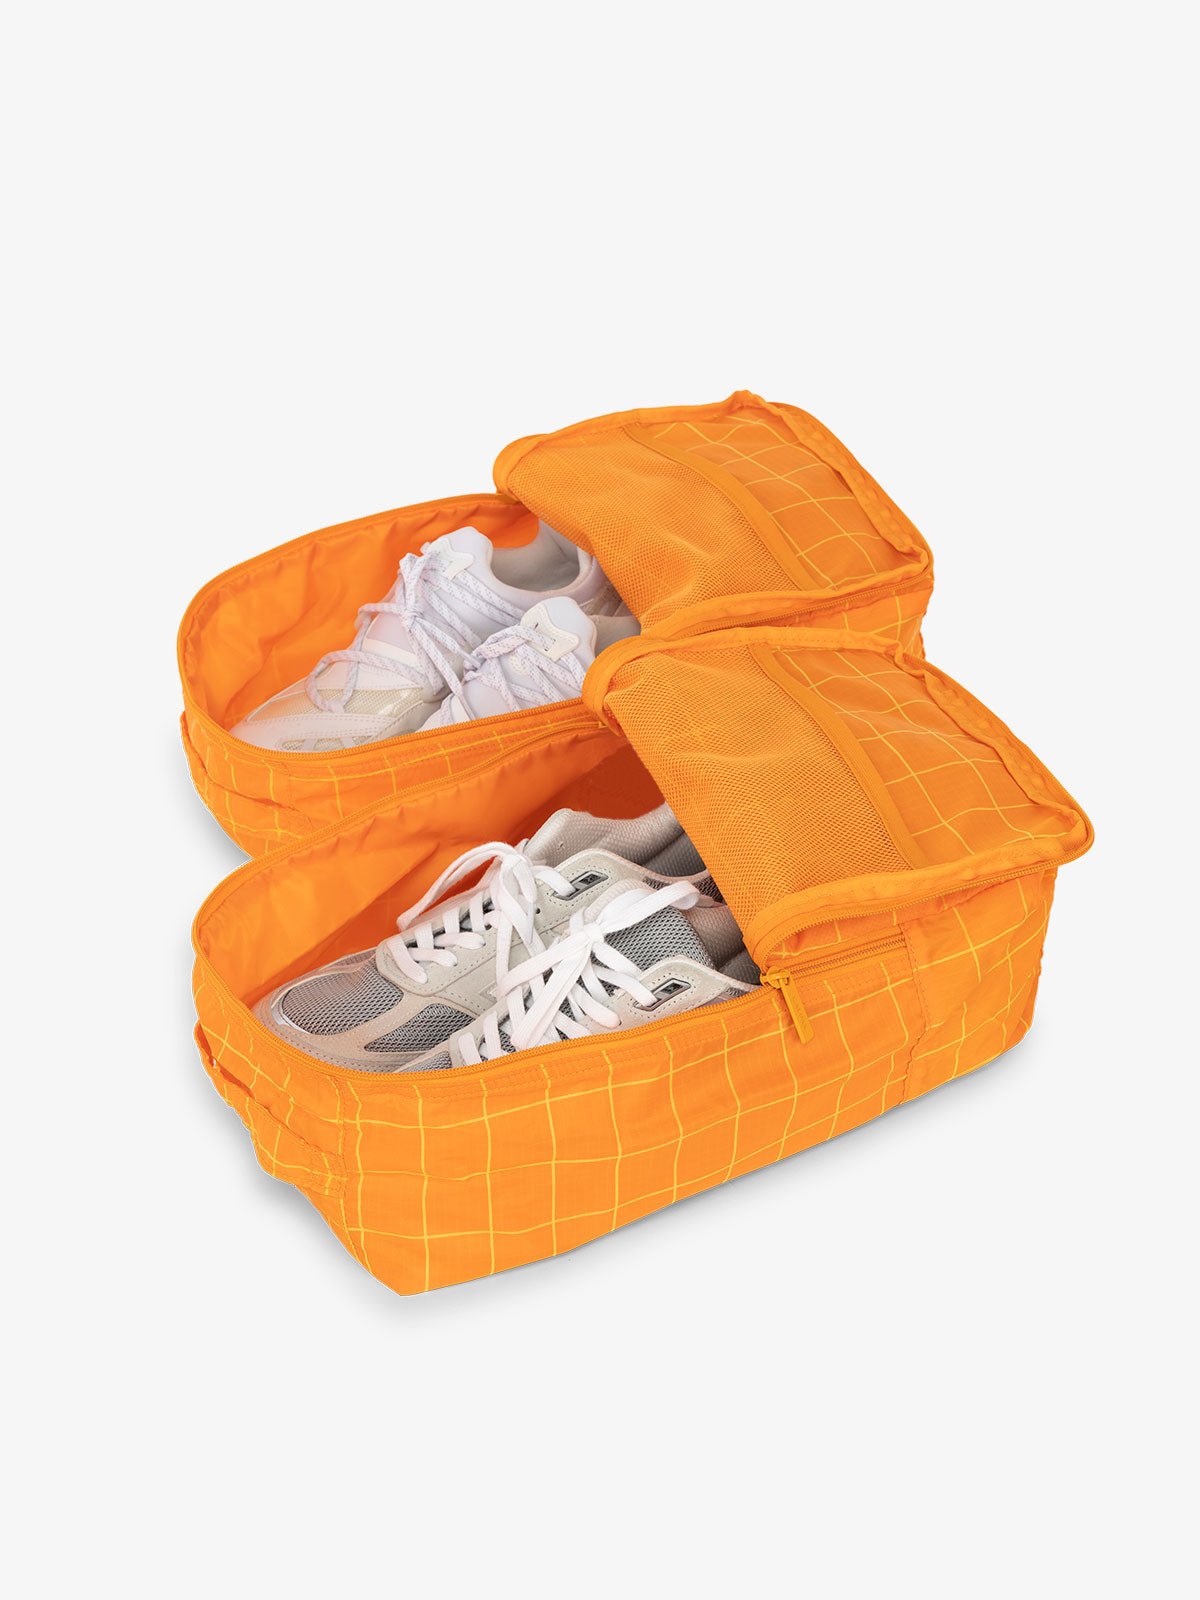 CALPAK Compakt shoe bag set with mesh pockets for travel in orange grid